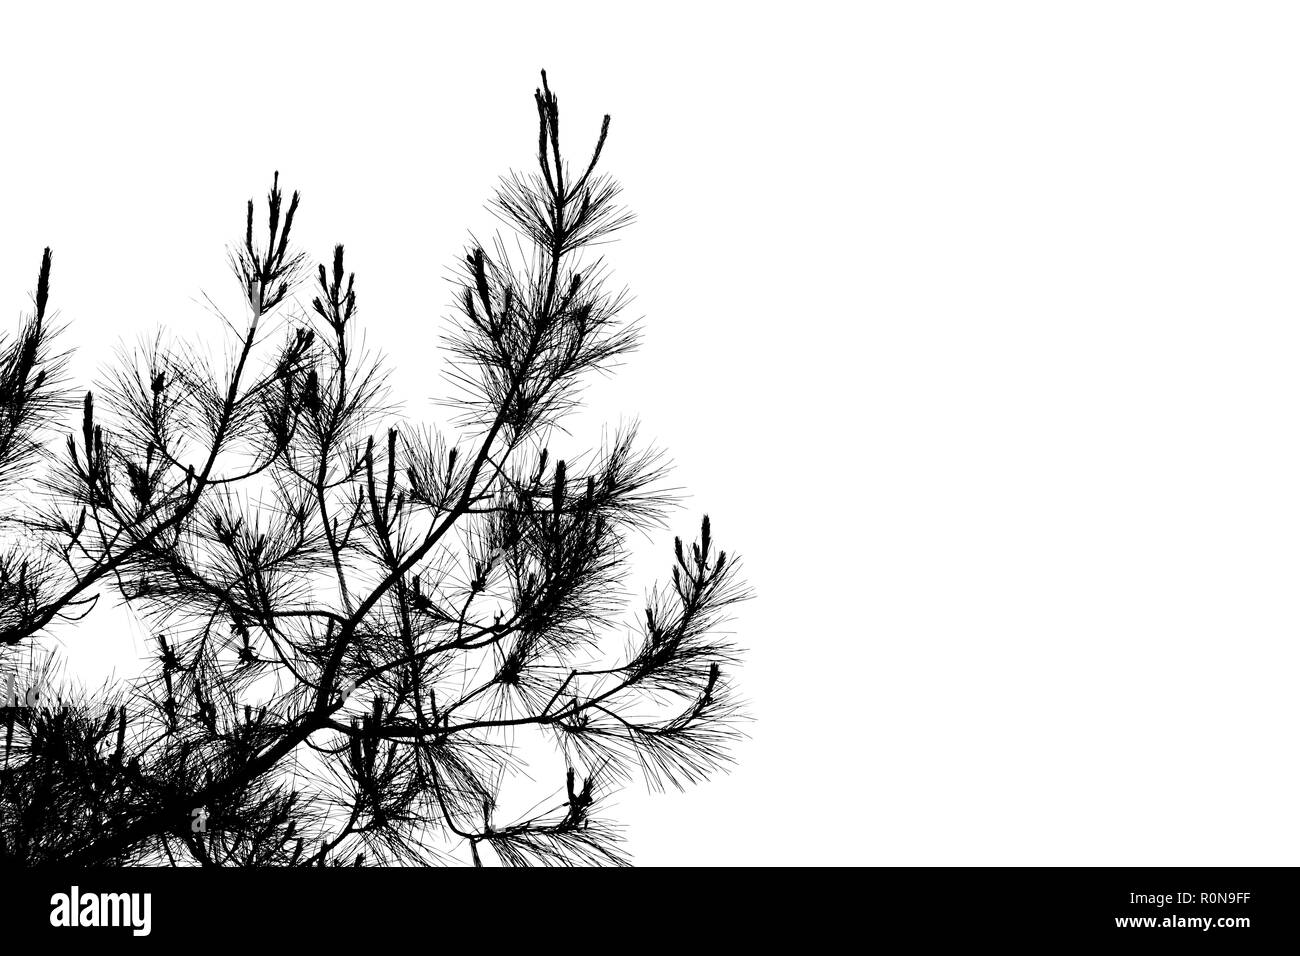 Pine Tree Branches mit langen Nadeln close-up, natürliche schwarze Silhouette Foto Stockfoto